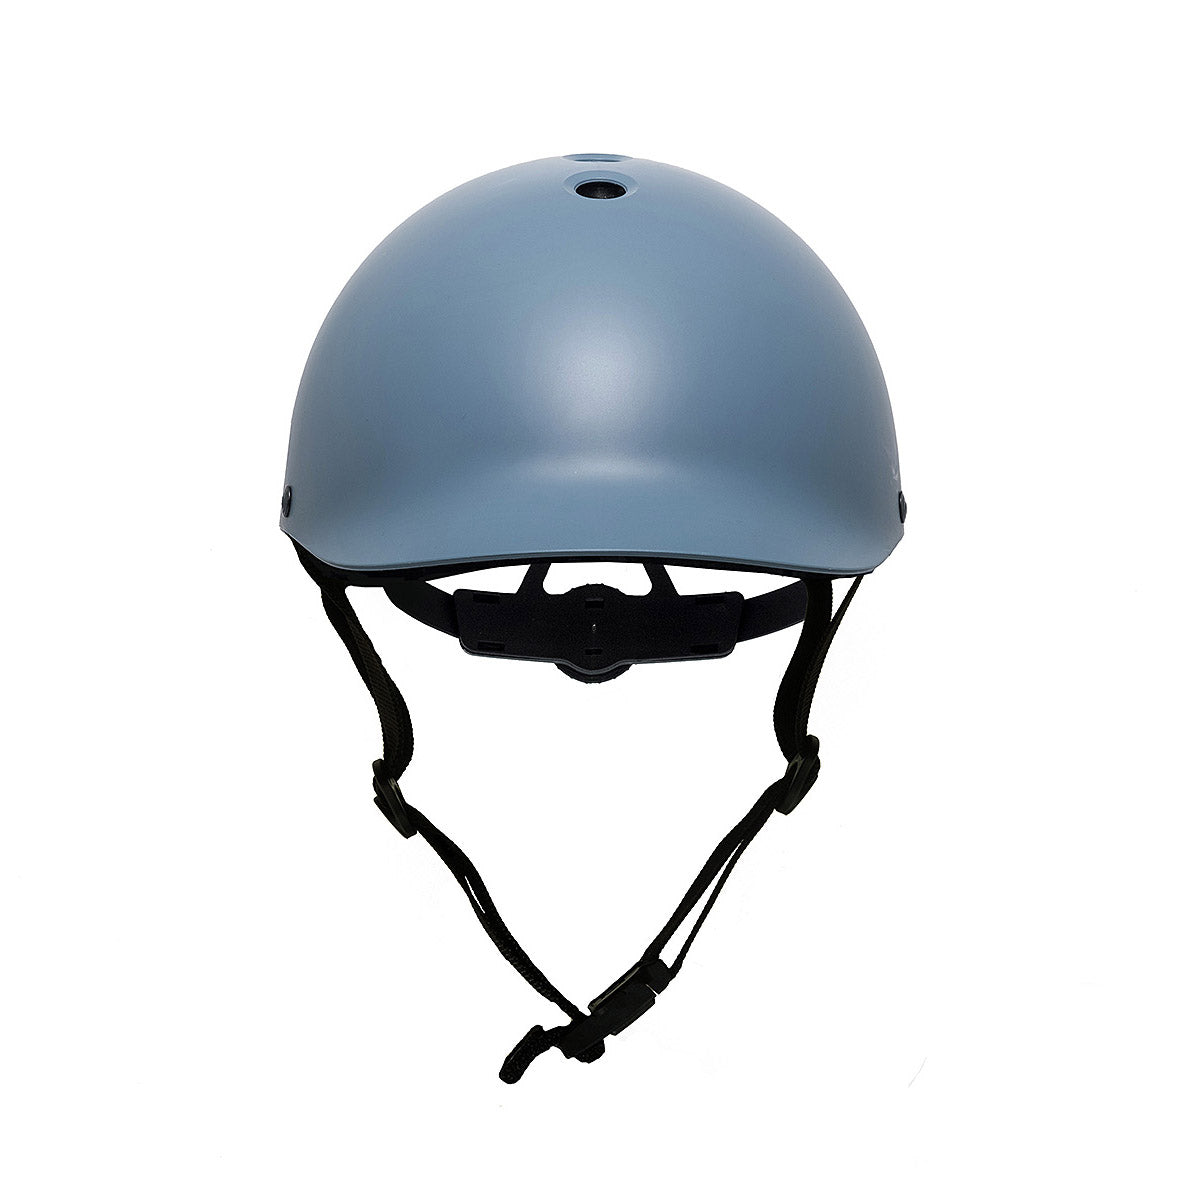 Dashel ReCycle Helmet